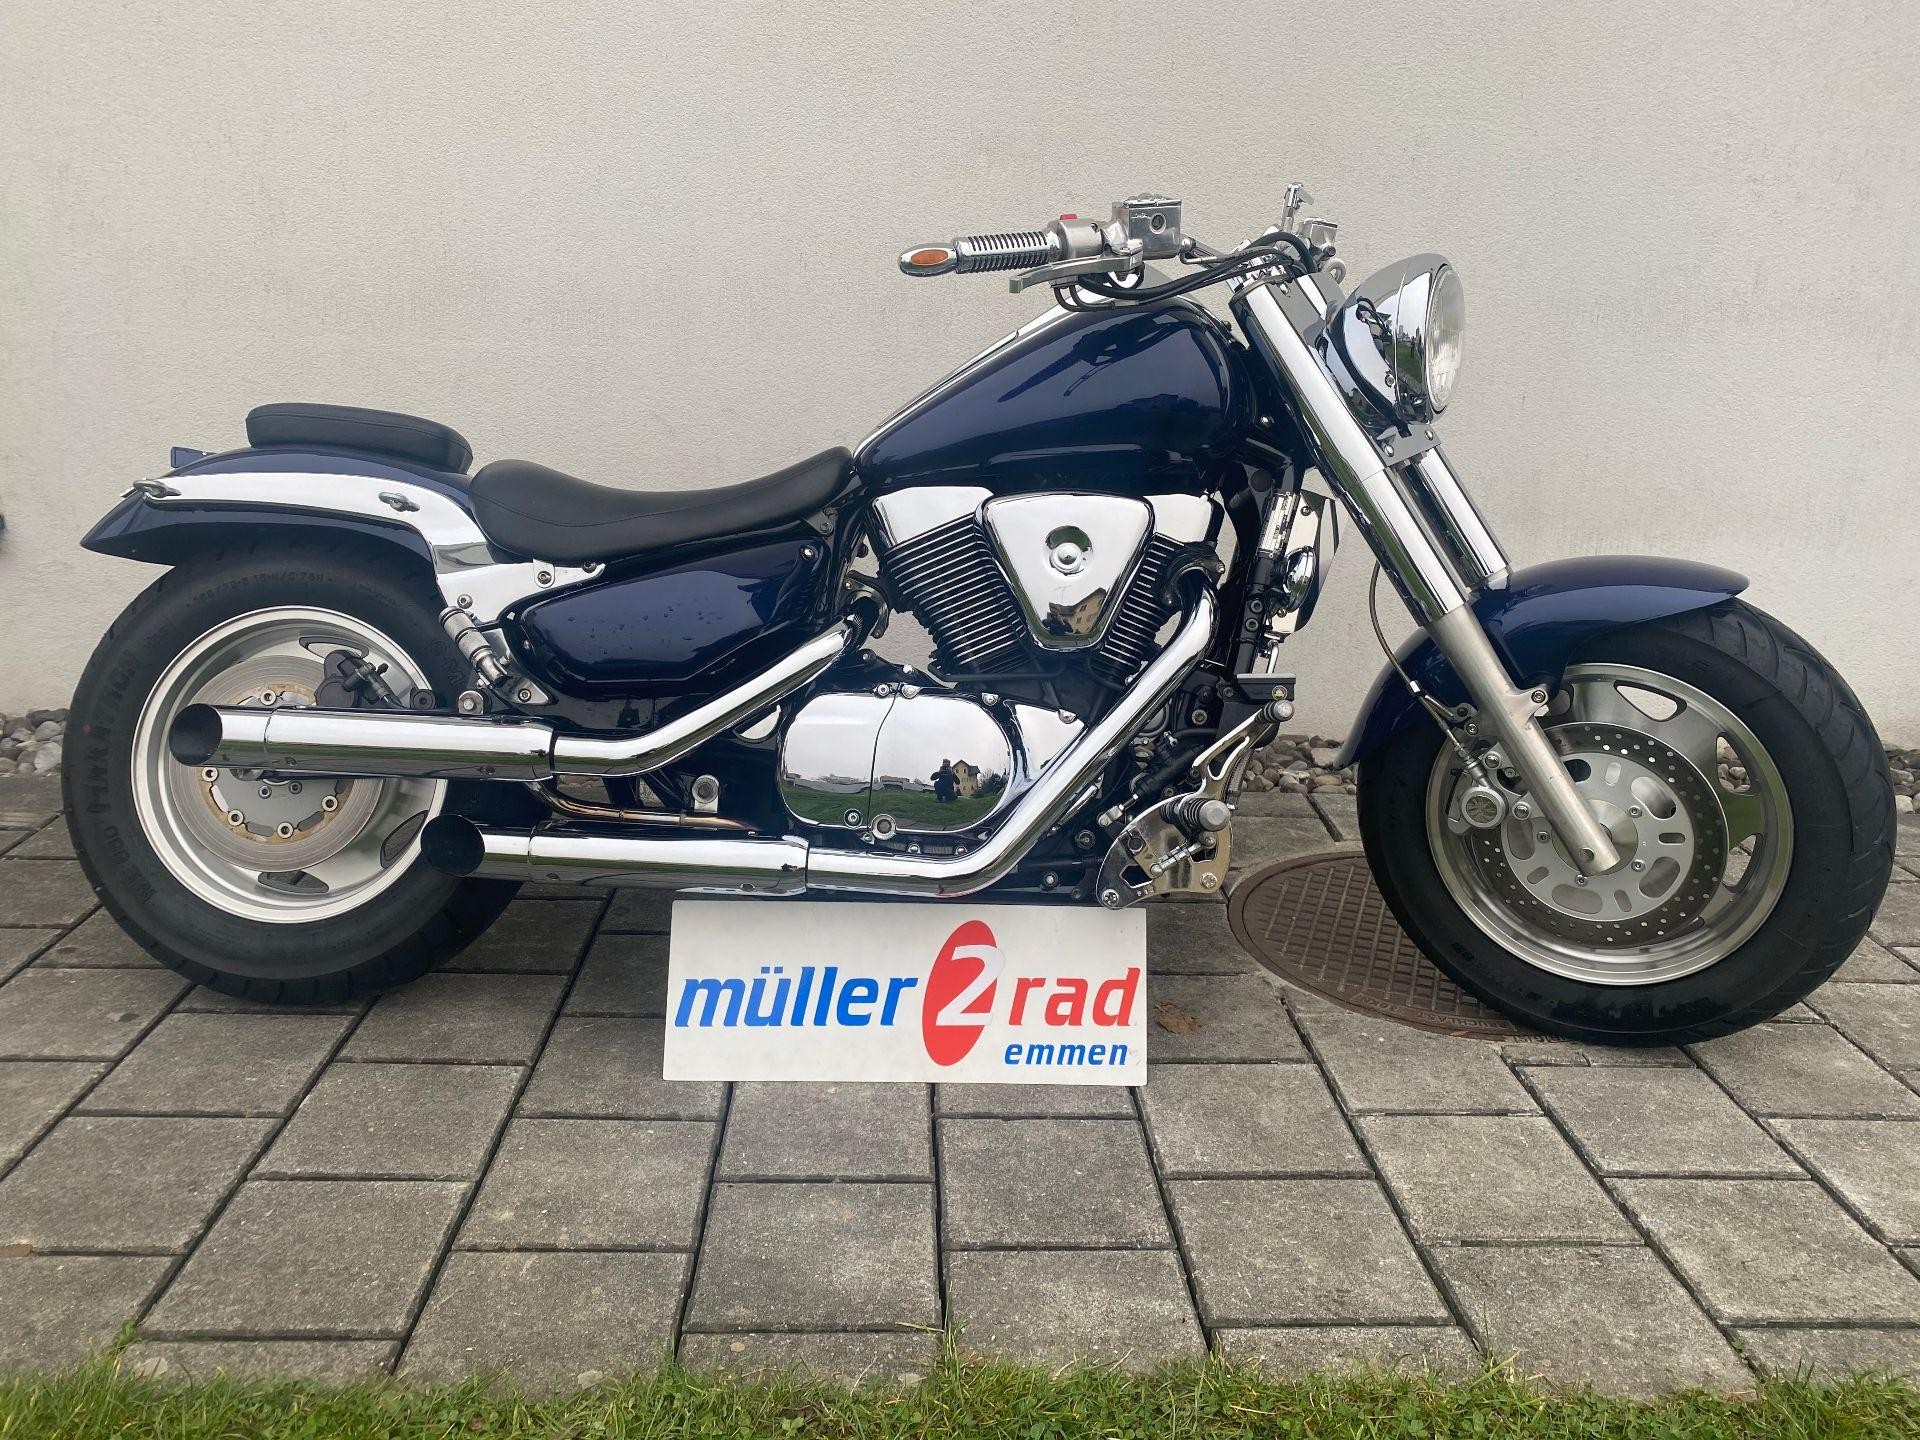 Motorrad Occasion kaufen SUZUKI VL 1500 Intruder müller